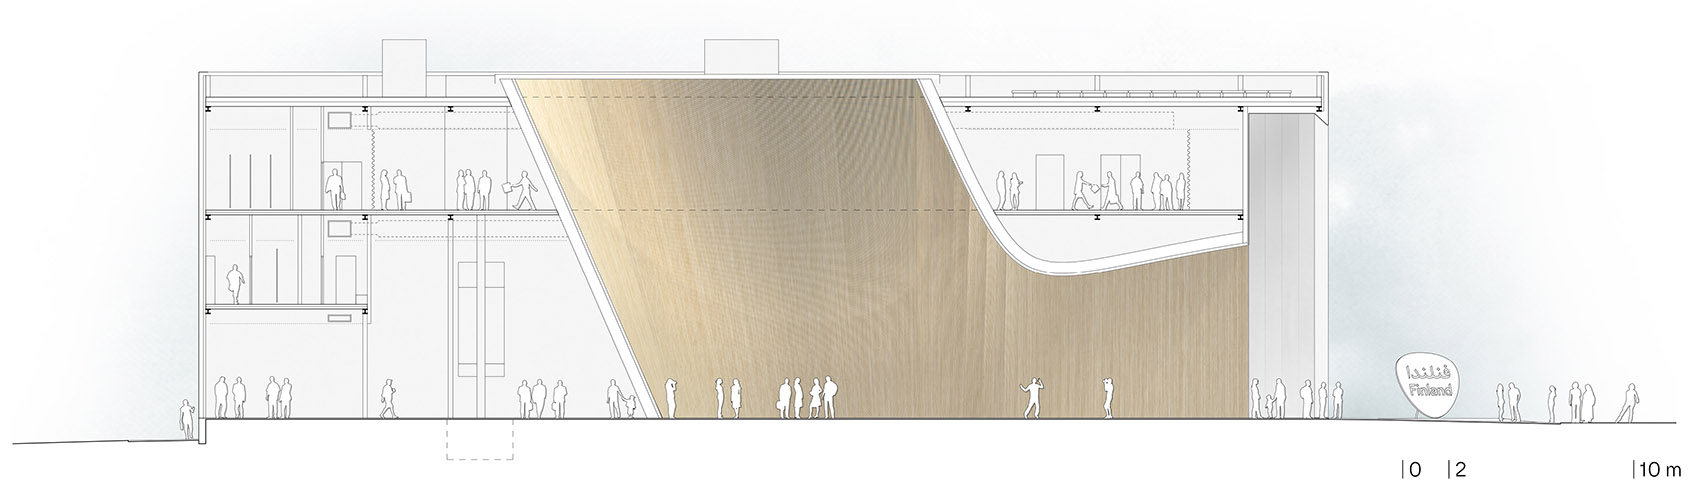 2020迪拜世博会芬兰馆/覆盖在沙漠上的白色积雪-82